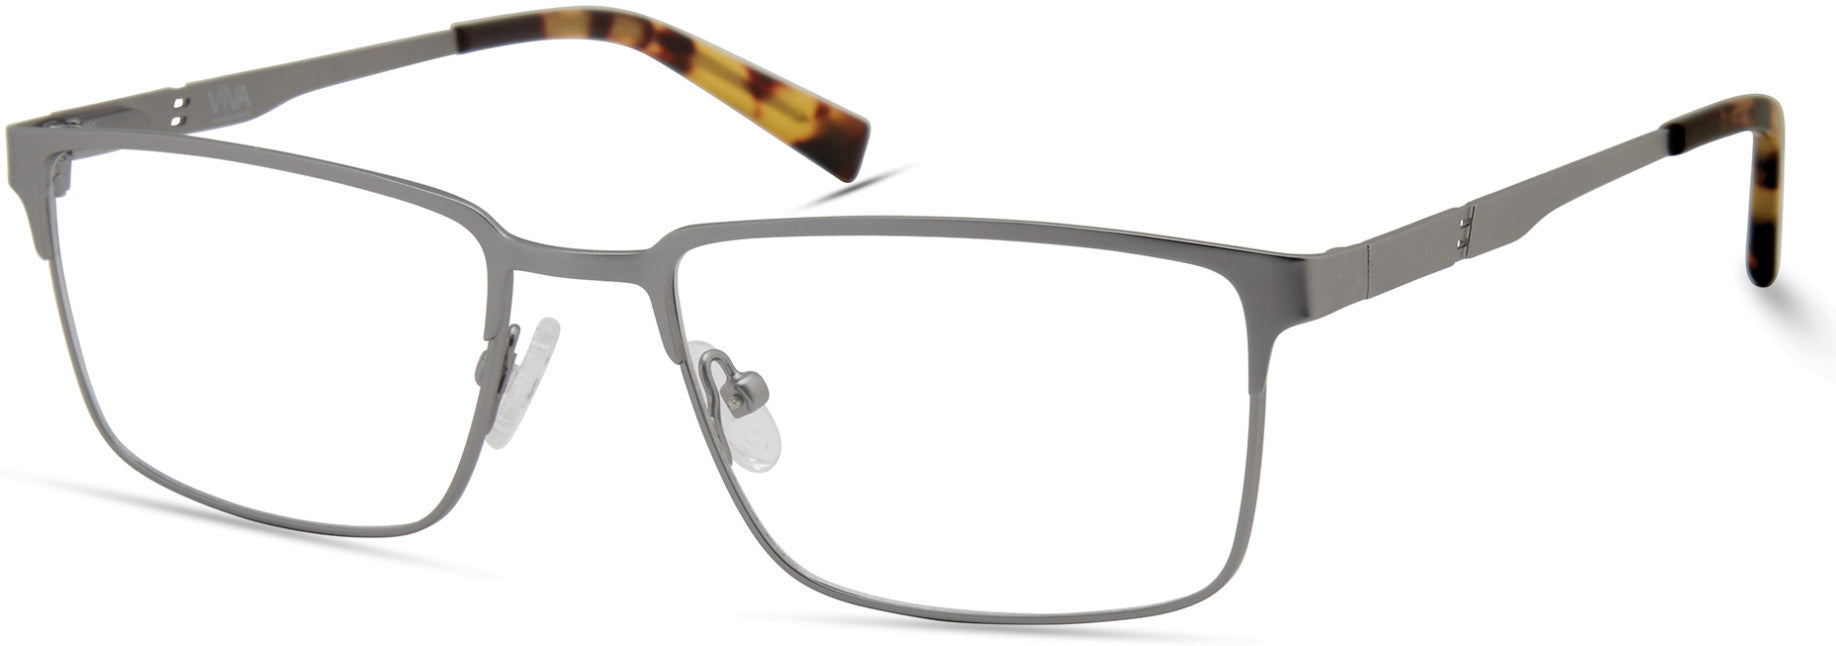 Viva VV4040 Rectangular Eyeglasses 009-009 - Matte Gunmetal